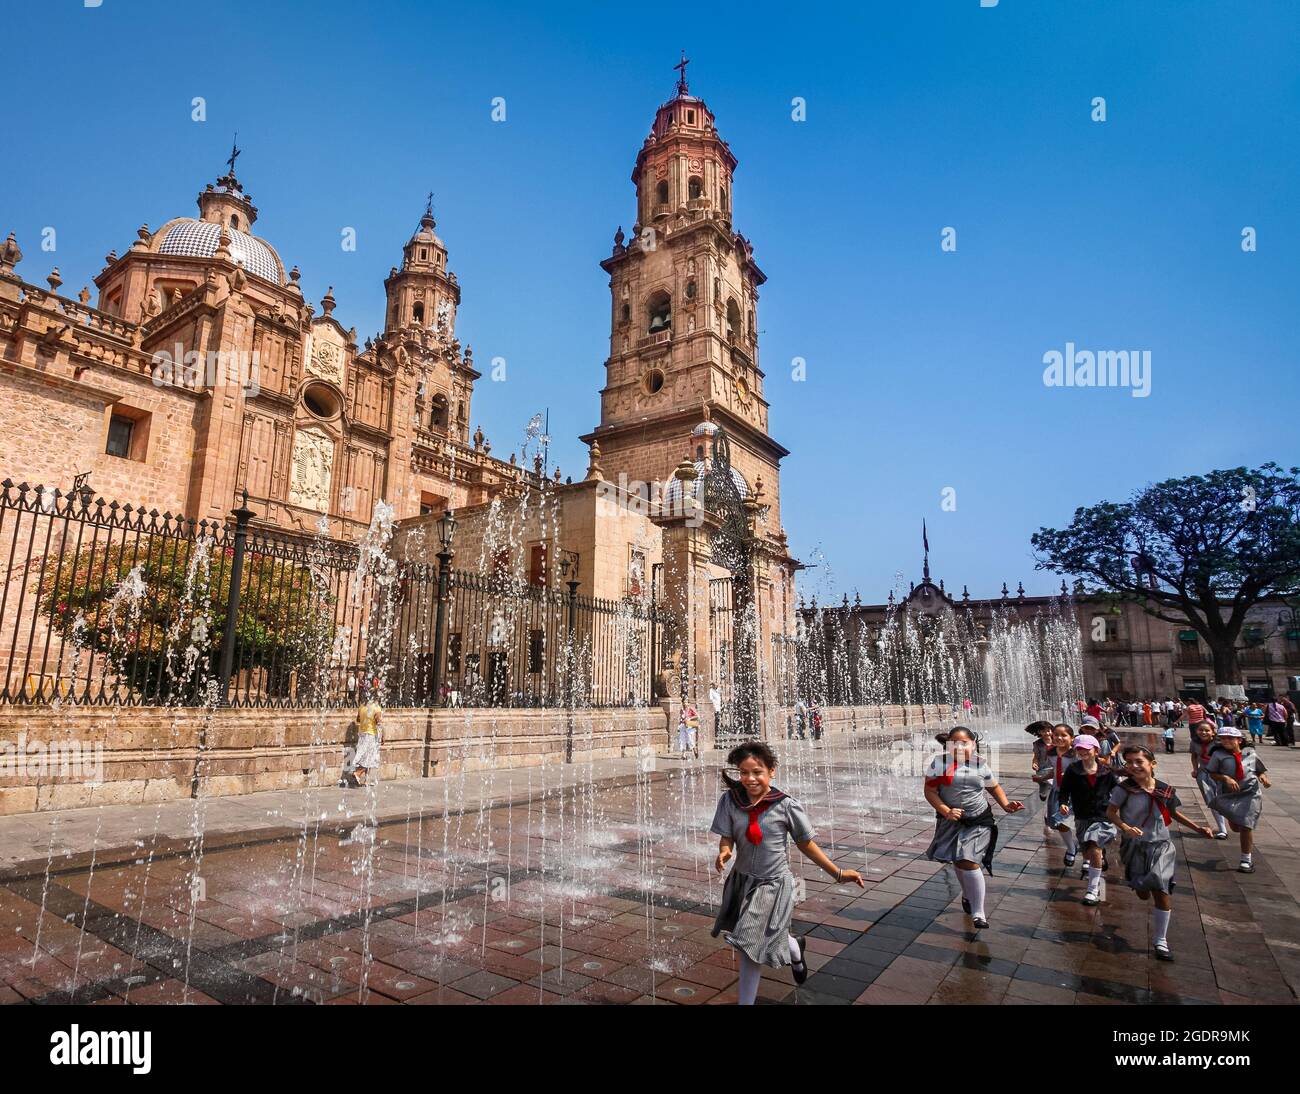 Las niñas corren a través de una fuente en la plaza junto a la catedral en Morelia, Michoacán, México. Foto de stock